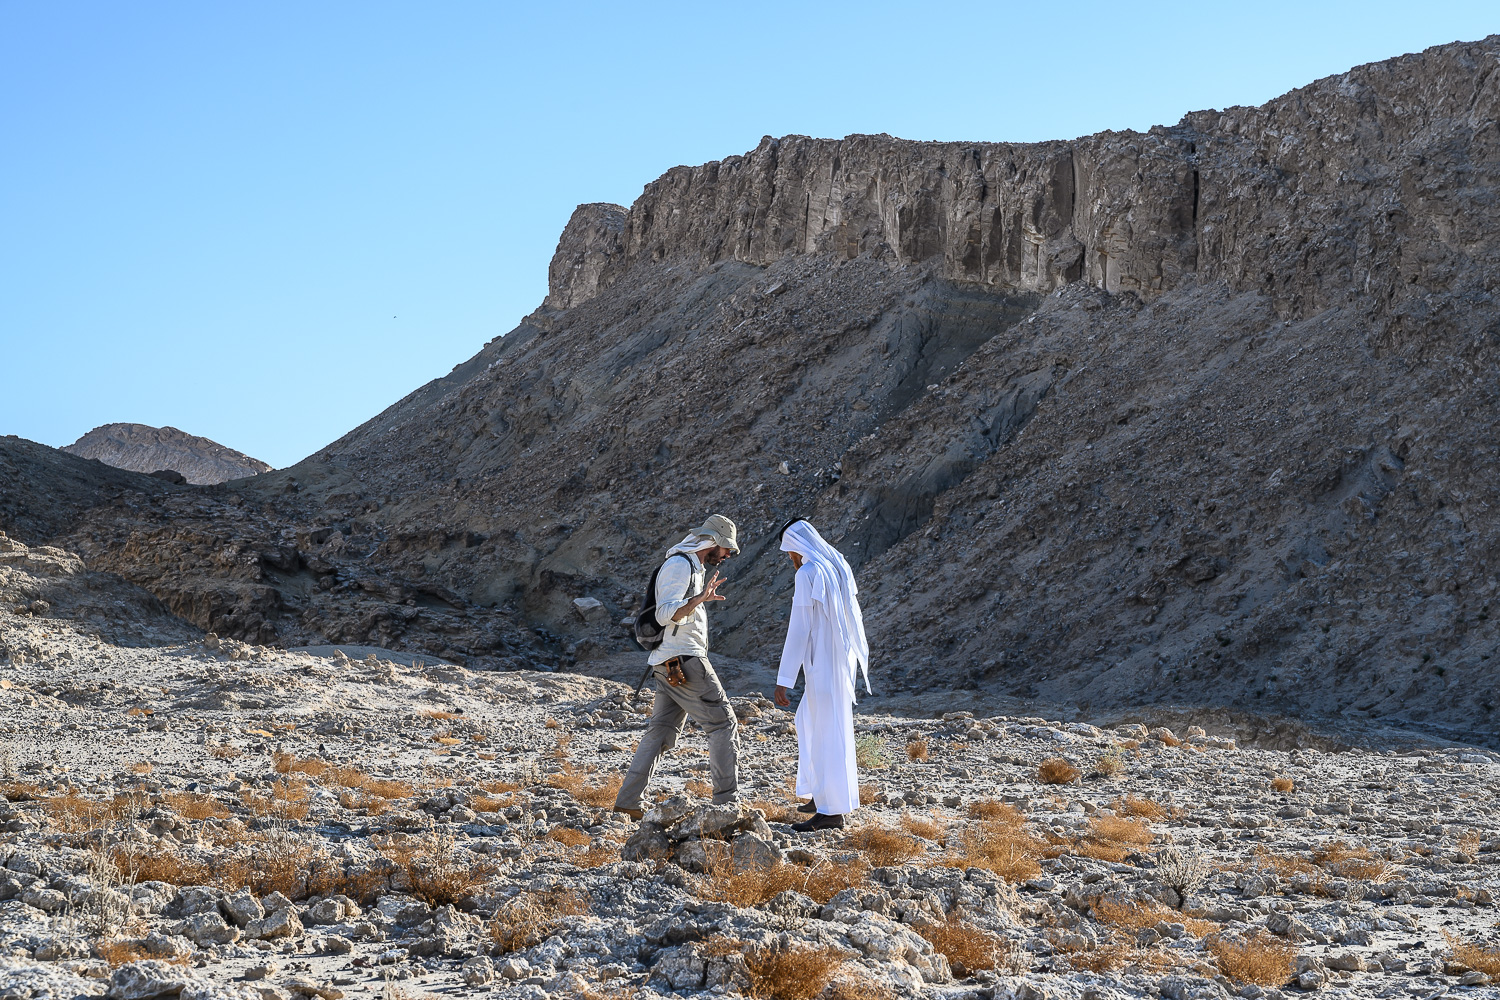 Arabie Saoudite. Al-Bad. Discussion entre Guillaume Charloux et Waleed al-Badaiwi, archéologues français et saoudiens, sur la stratégie de fouilles à adopter sur un site d'habitat antique